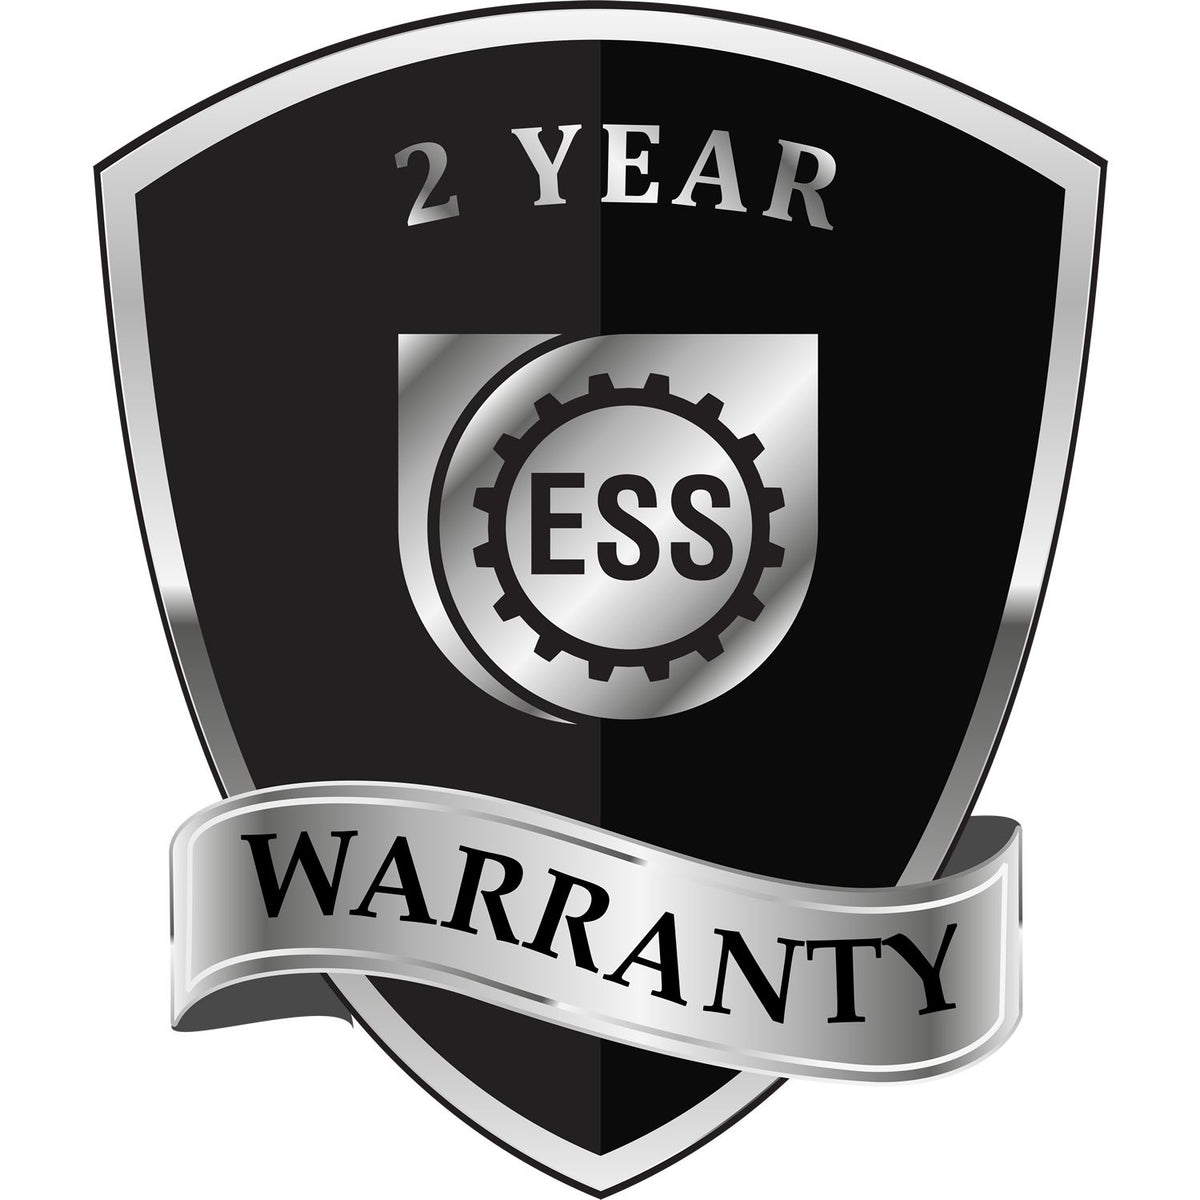 A black and silver badge or emblem showing warranty information for the Gift Alaska Land Surveyor Seal